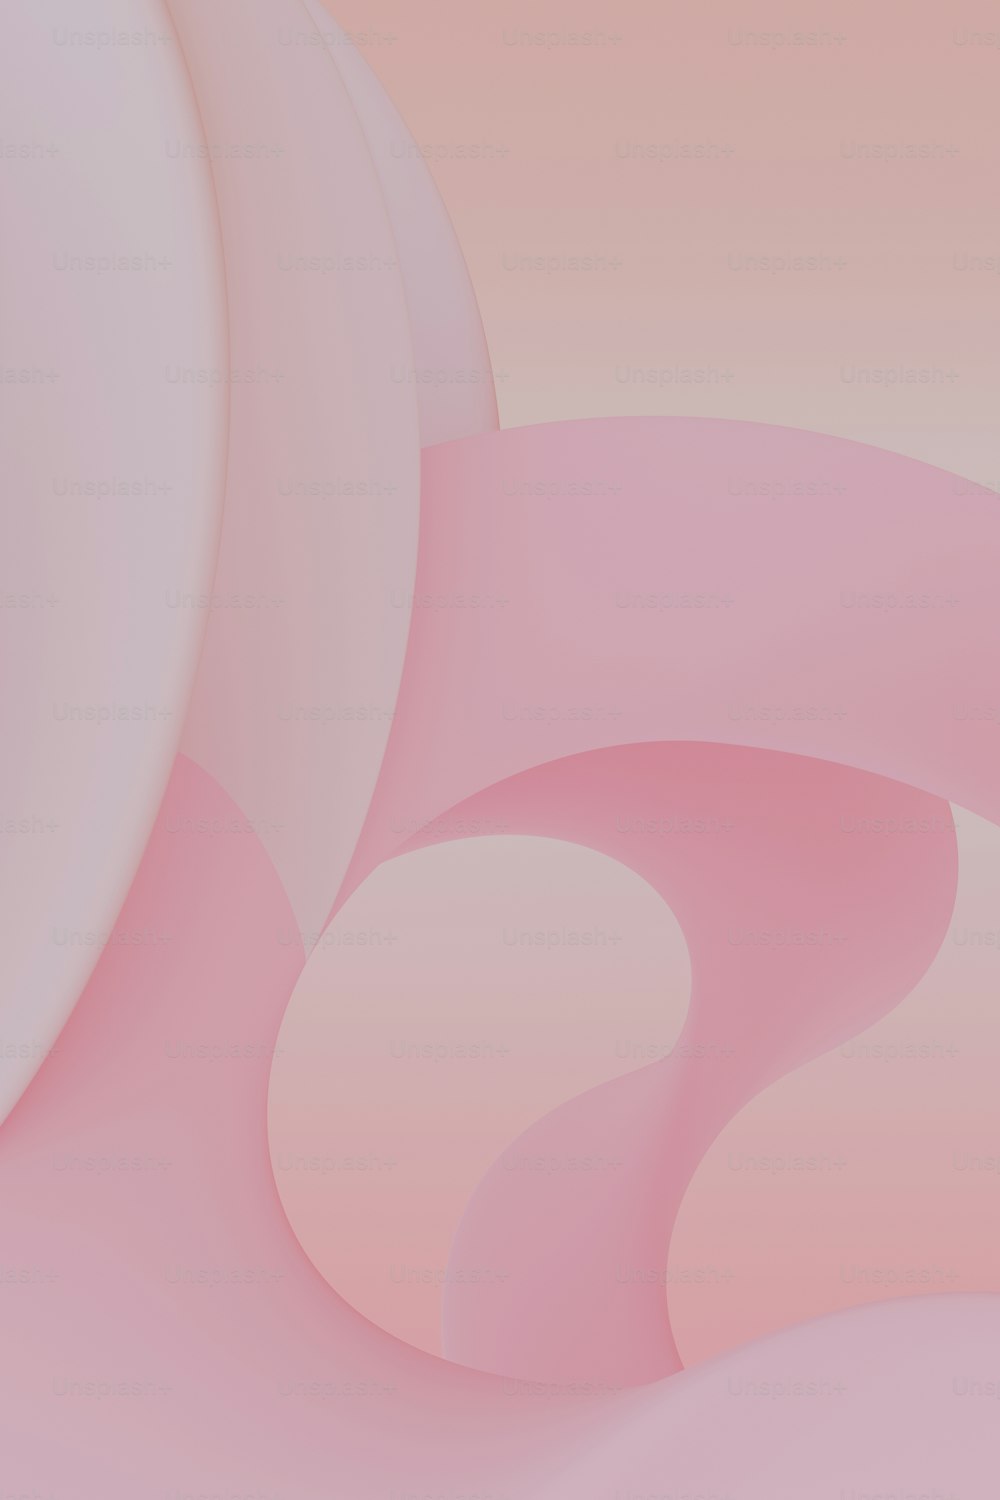 Hình nền trừu tượng màu hồng trắng với các hình dạng cong sẽ đem lại cho bạn cảm giác nhẹ nhàng và thư giãn khi sử dụng máy tính, điện thoại. Những điểm cong mềm mại, hòa quyện với sức sống của màu hồng trắng càng làm tăng thêm tính thẩm mỹ cho chiếc máy của bạn. Hãy tải ngay để cảm nhận sự đẹp trai, đáng yêu của những hình dáng trừu tượng này.